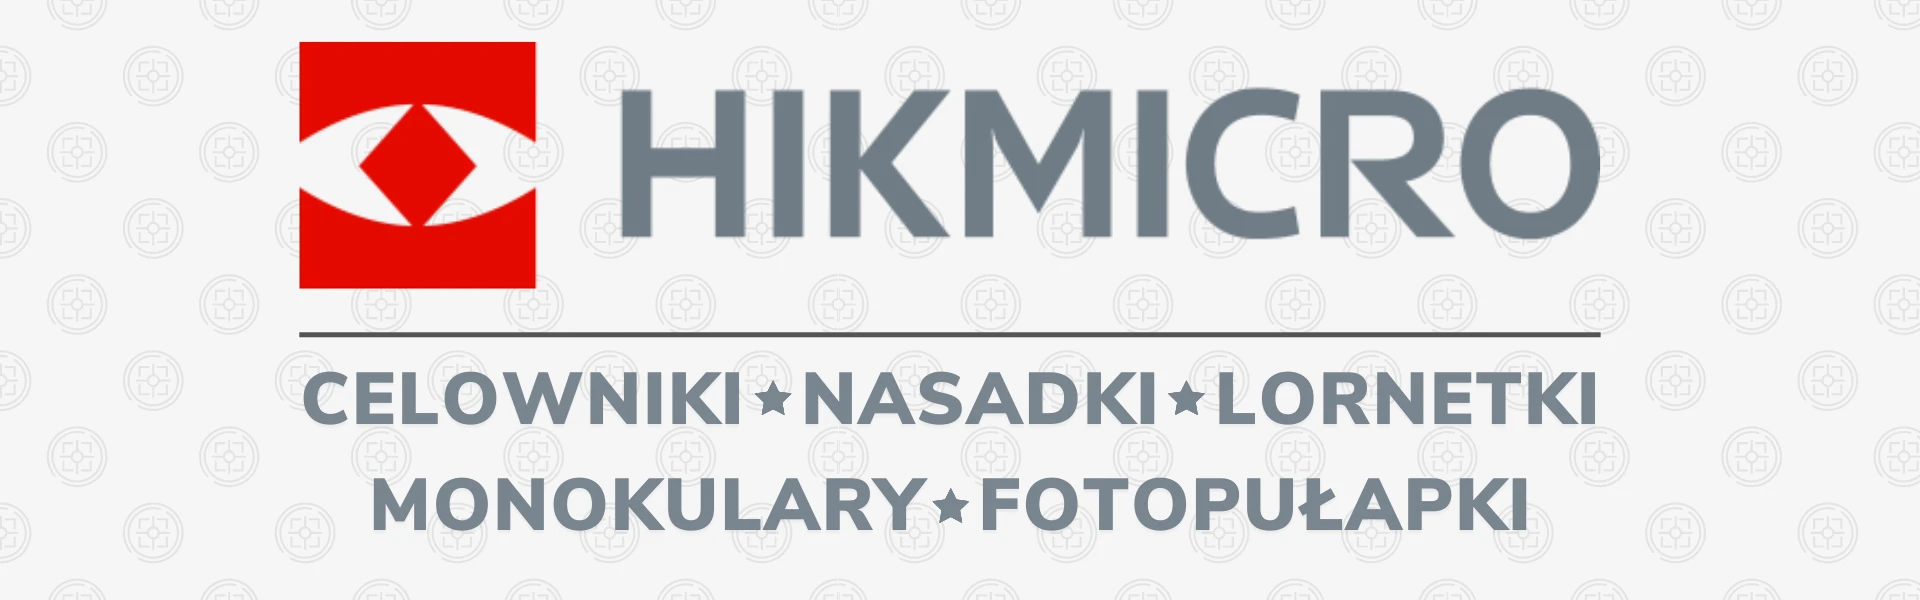 Hikmikro-noktowizory-termowizory-celowniki-nasadki-monokulary